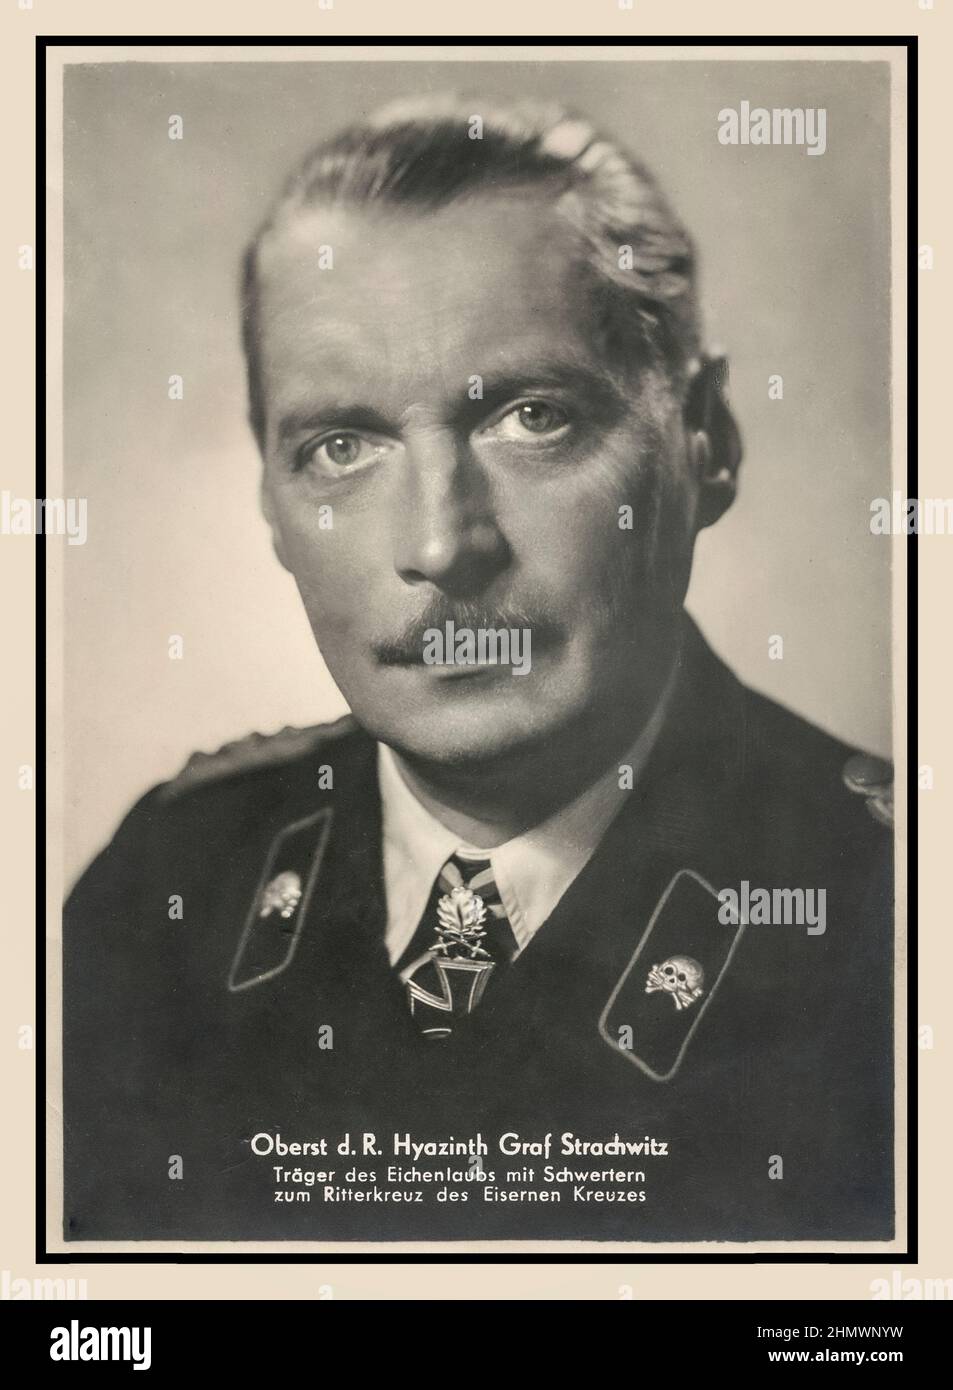 Hyazinth Graf Strachwitz, portrait officiel de l'Allemagne nazie, il était un officier allemand d'ascendance aristocratique dans la Wehrmacht pendant la Seconde Guerre mondiale Il a reçu la Croix de Chevalier de la Croix de fer avec des feuilles d'chêne, des mots et des diamants. Strachwitz est né en 1893 dans son domaine familial en Silésie. Panzer général Strachwitz. En utilisant la vitesse et l'audace, le chef de Panzer, Hyazinth Graf Strachwitz, a remporté plusieurs victoires sur le Front de l'est pendant la Seconde Guerre mondiale Banque D'Images